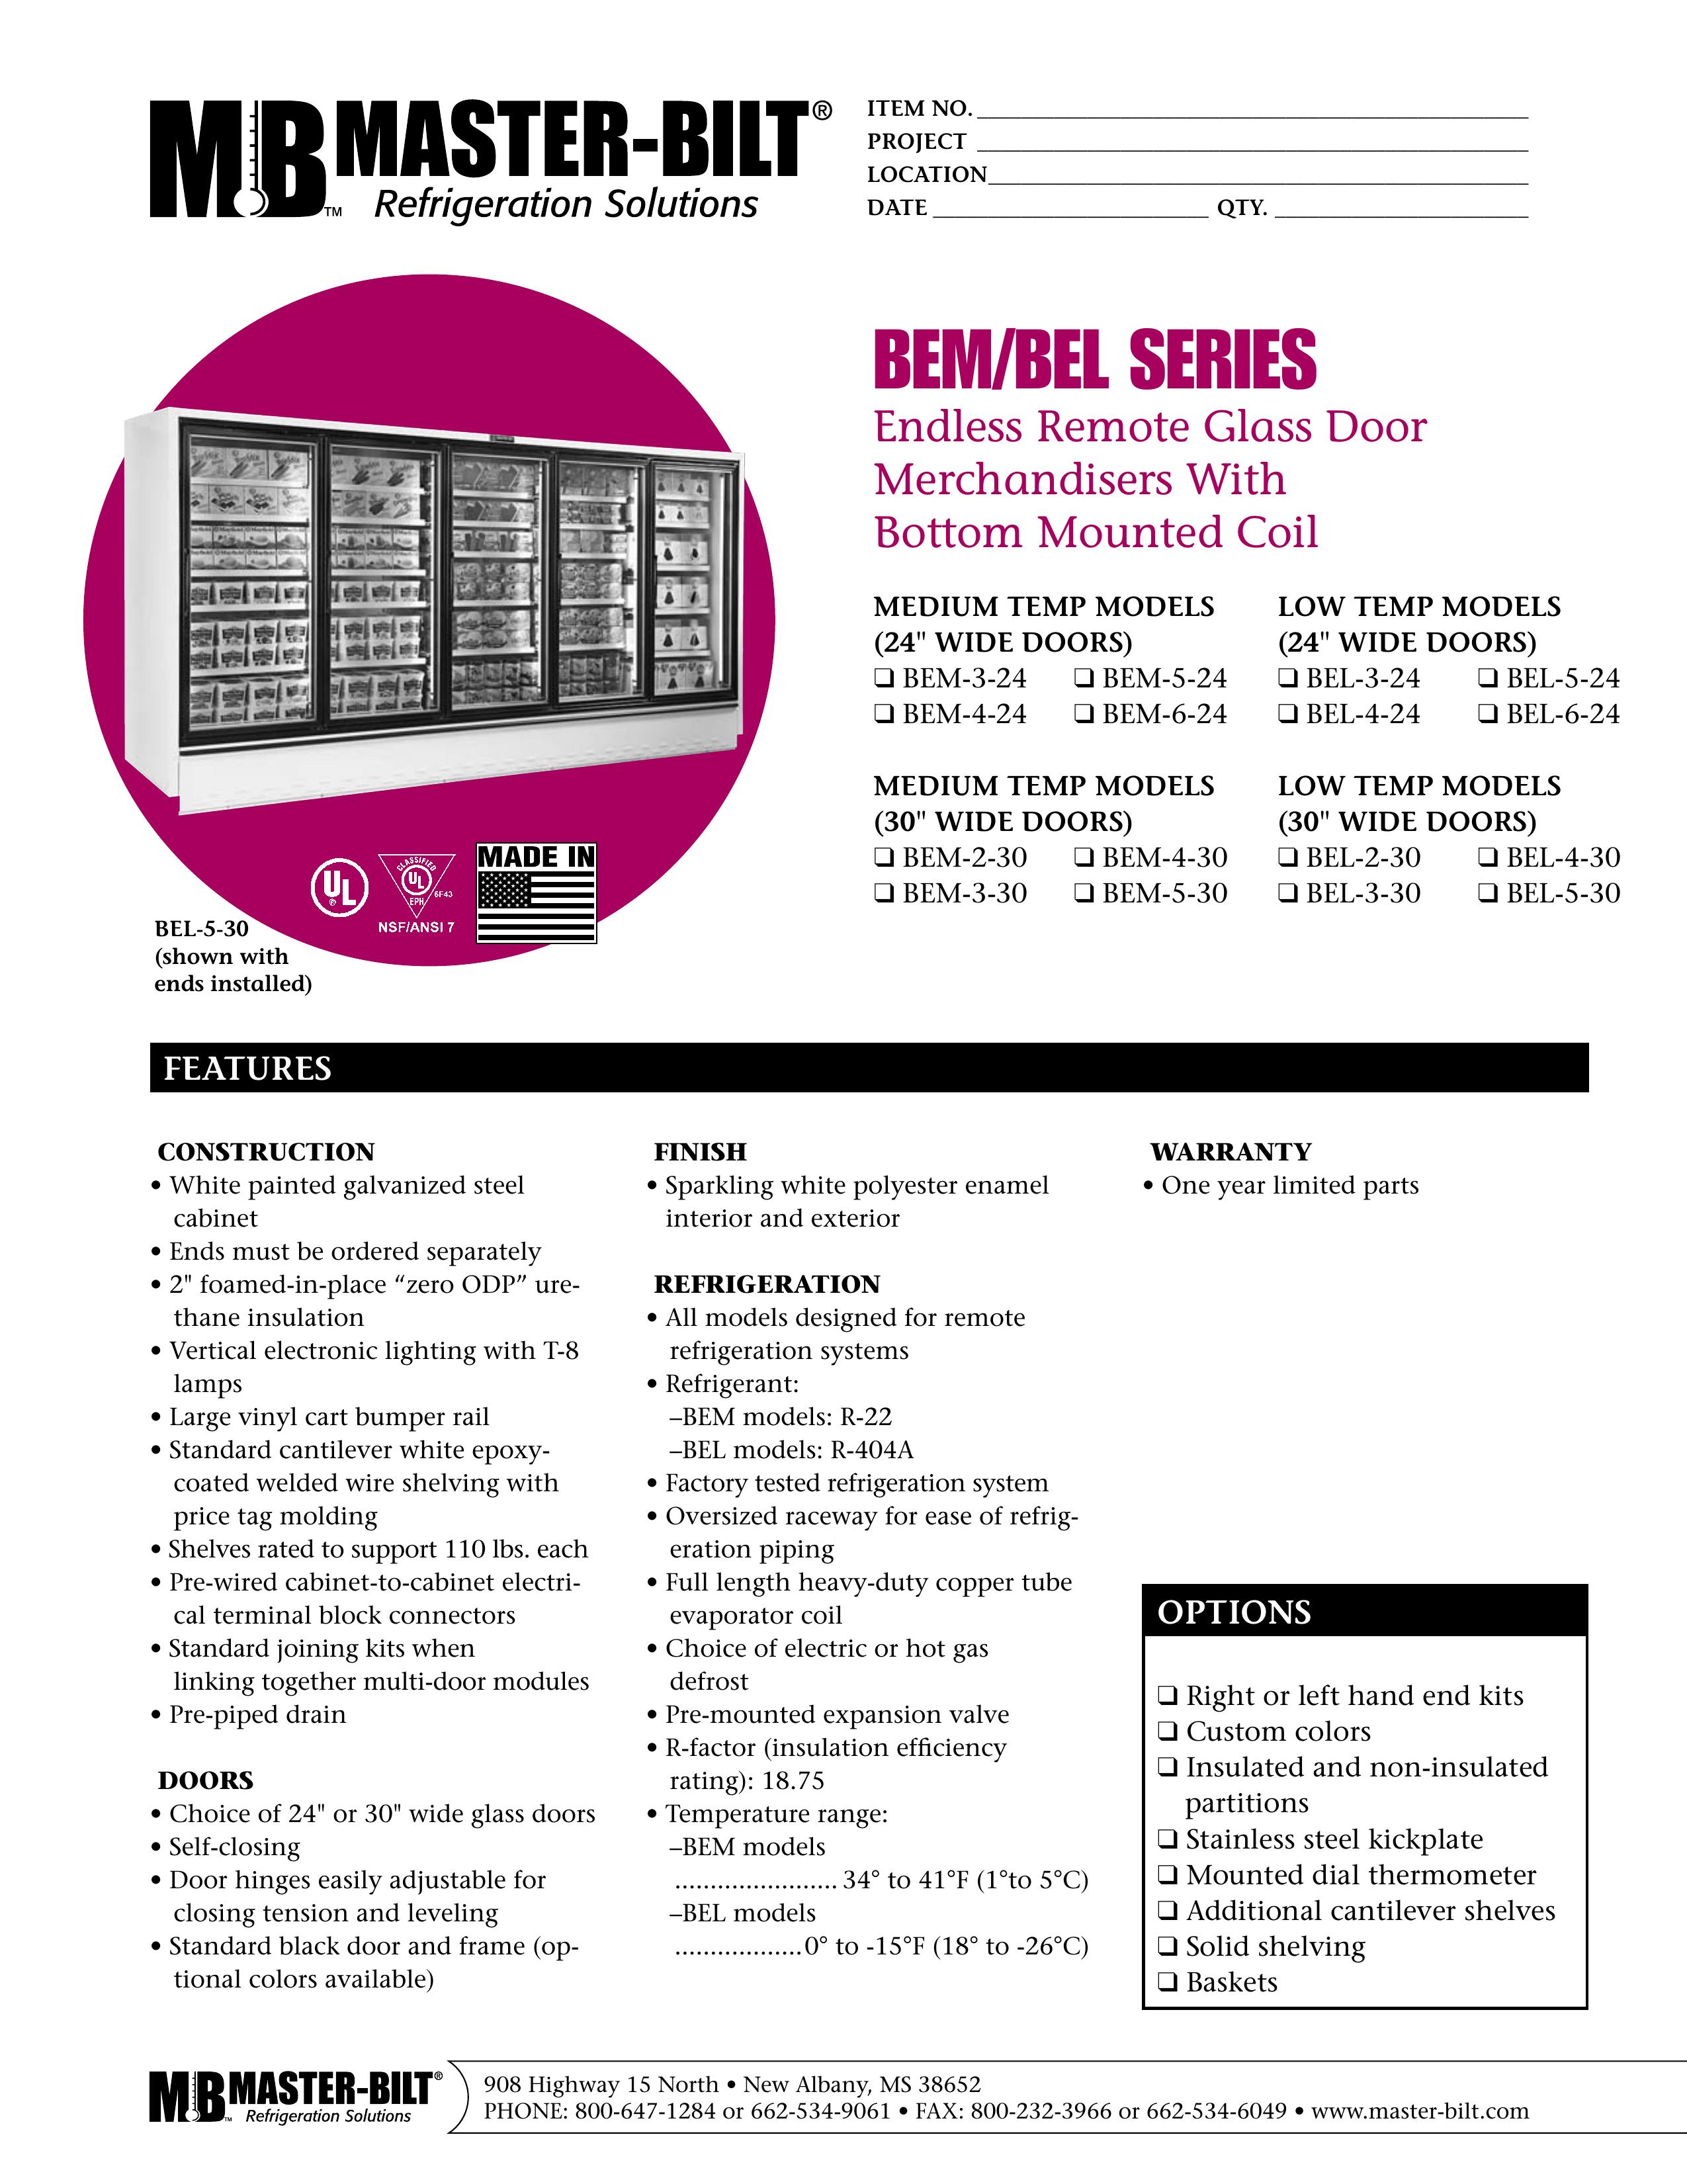 Master Bilt BEM-3-24 Refrigerator User Manual